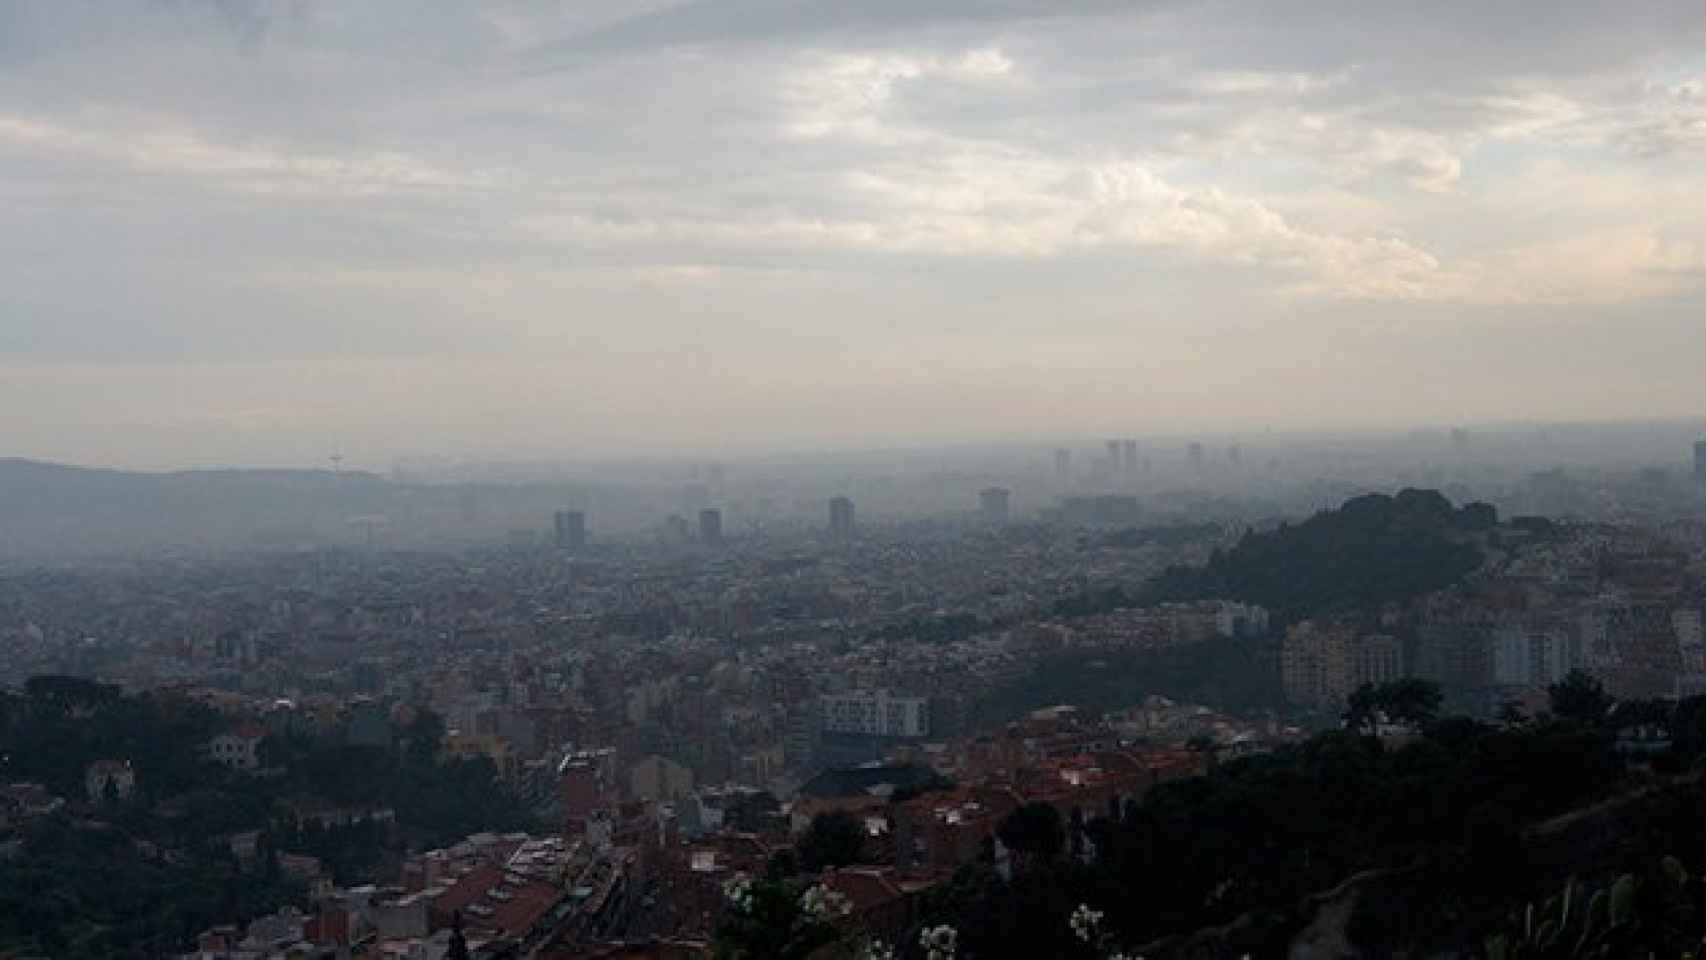 Imagen de Barcelona desde uno de los puntos altos de la ciudad / CG